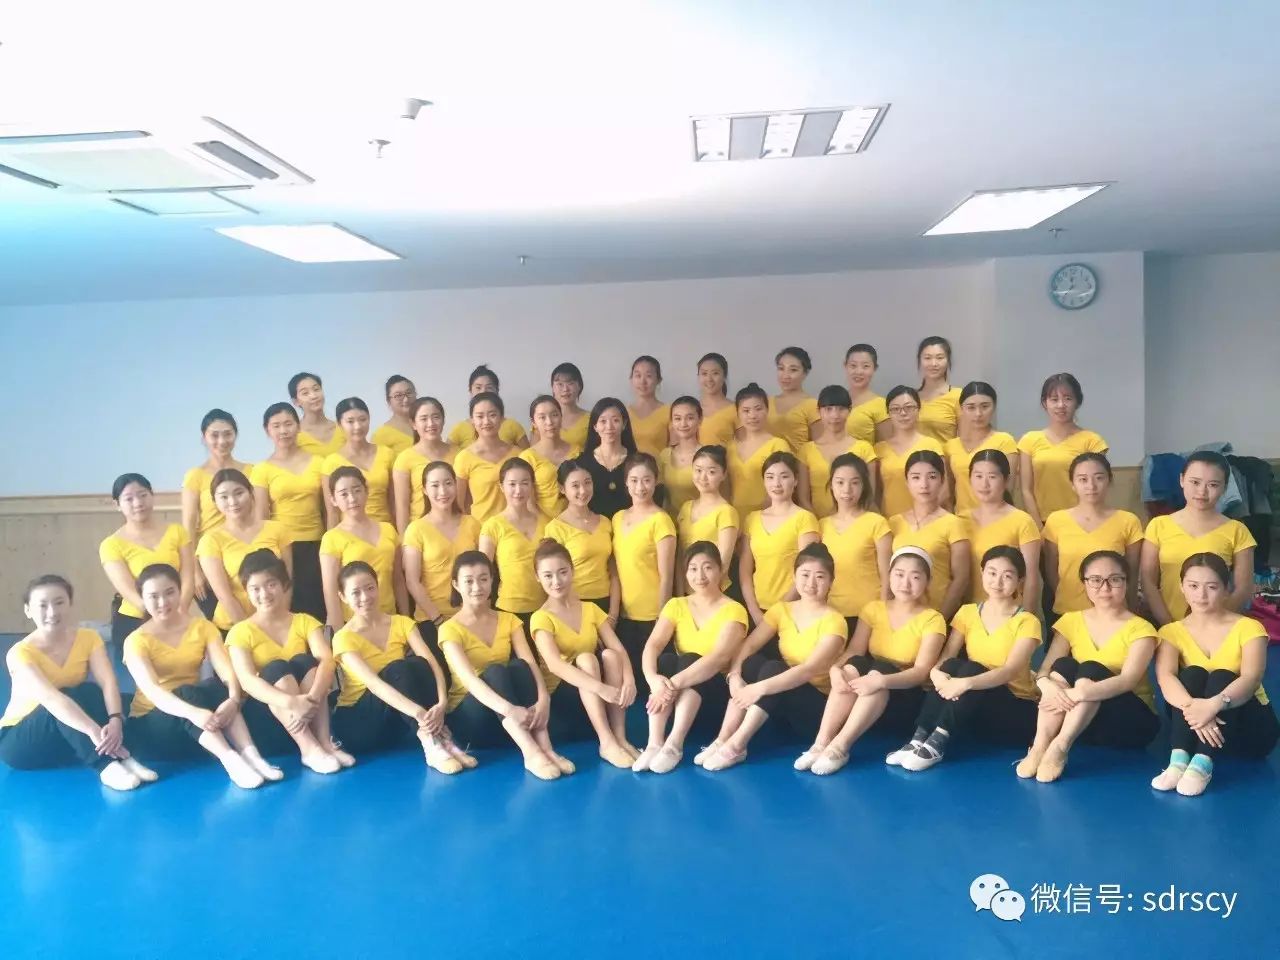 歌舞艺术中心将在菏泽举办2017(十月)教师班(北京舞蹈学院中国舞教材)